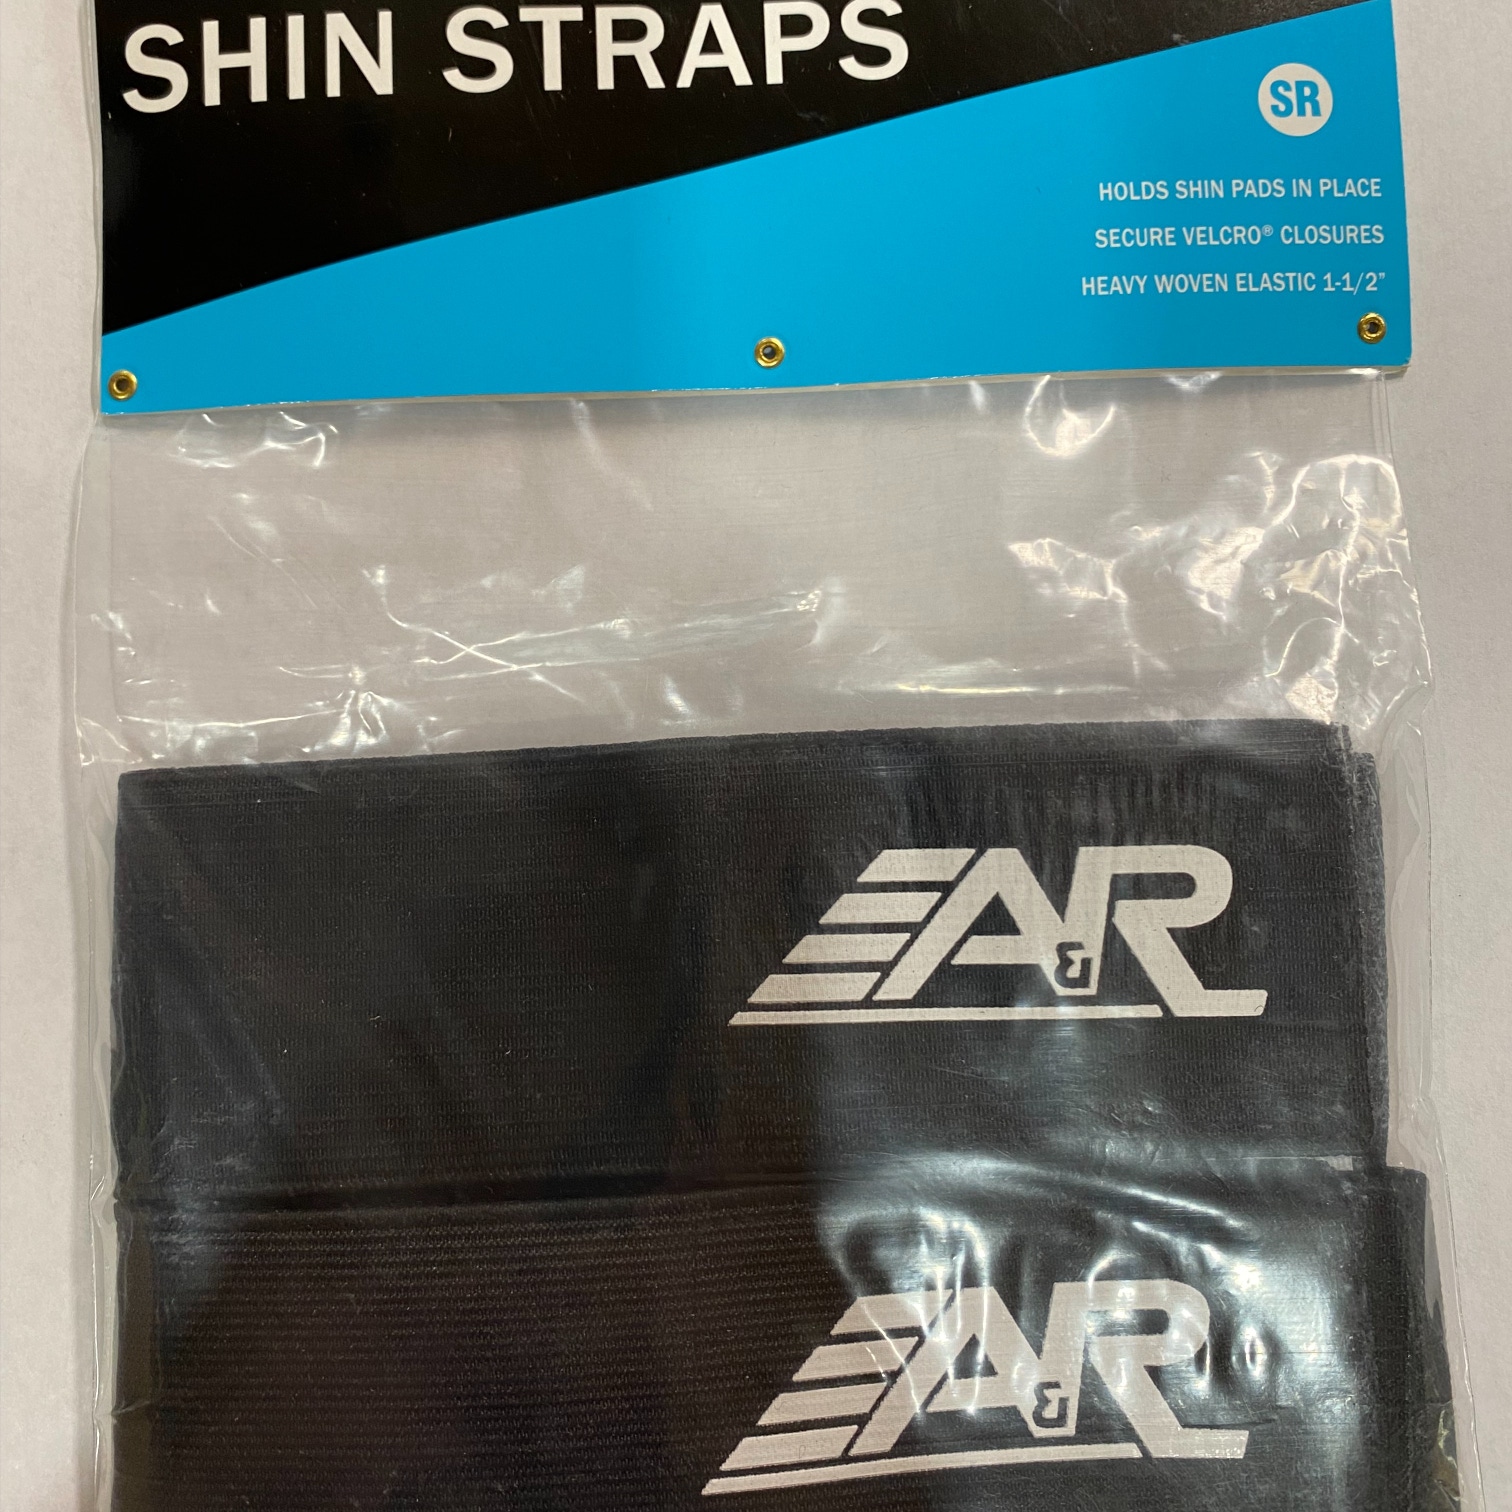 New A&R shin straps 2 pr pack  SR